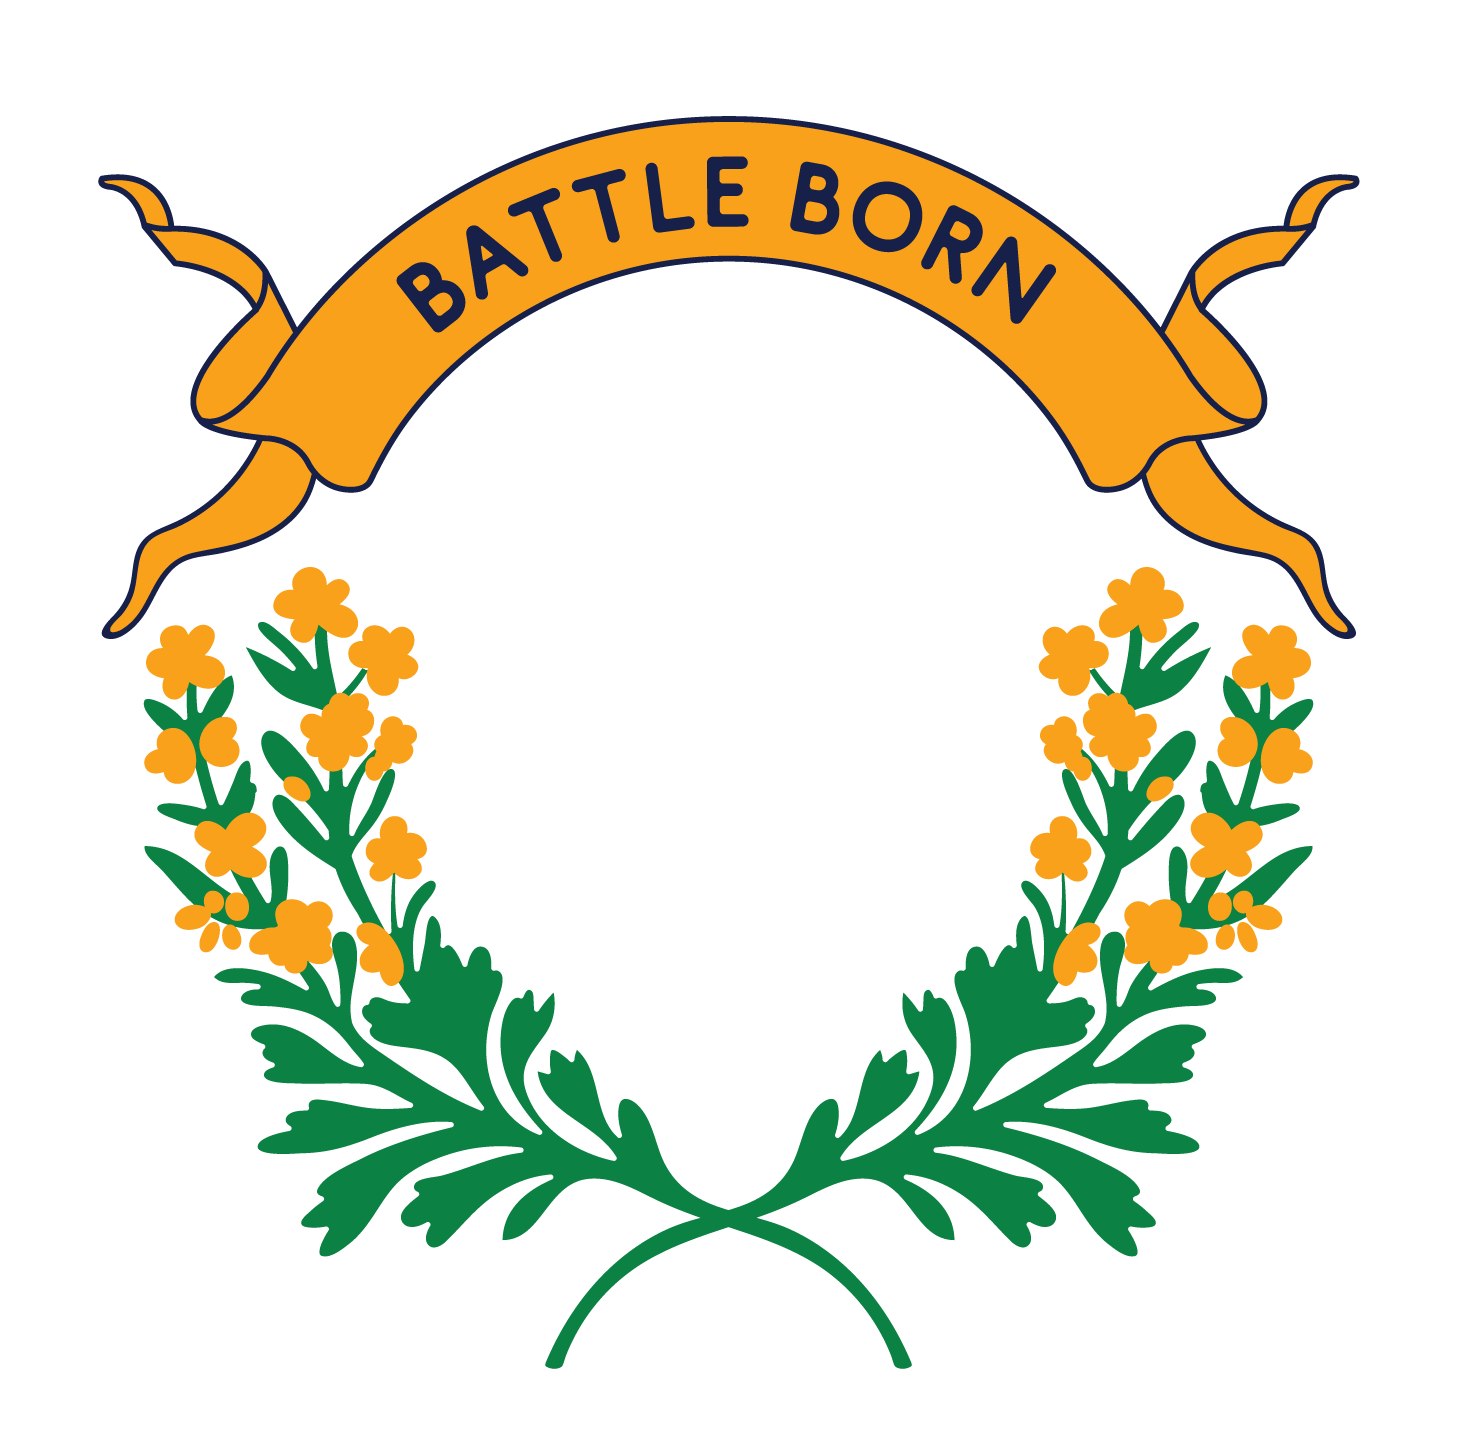 Battle Born watermark